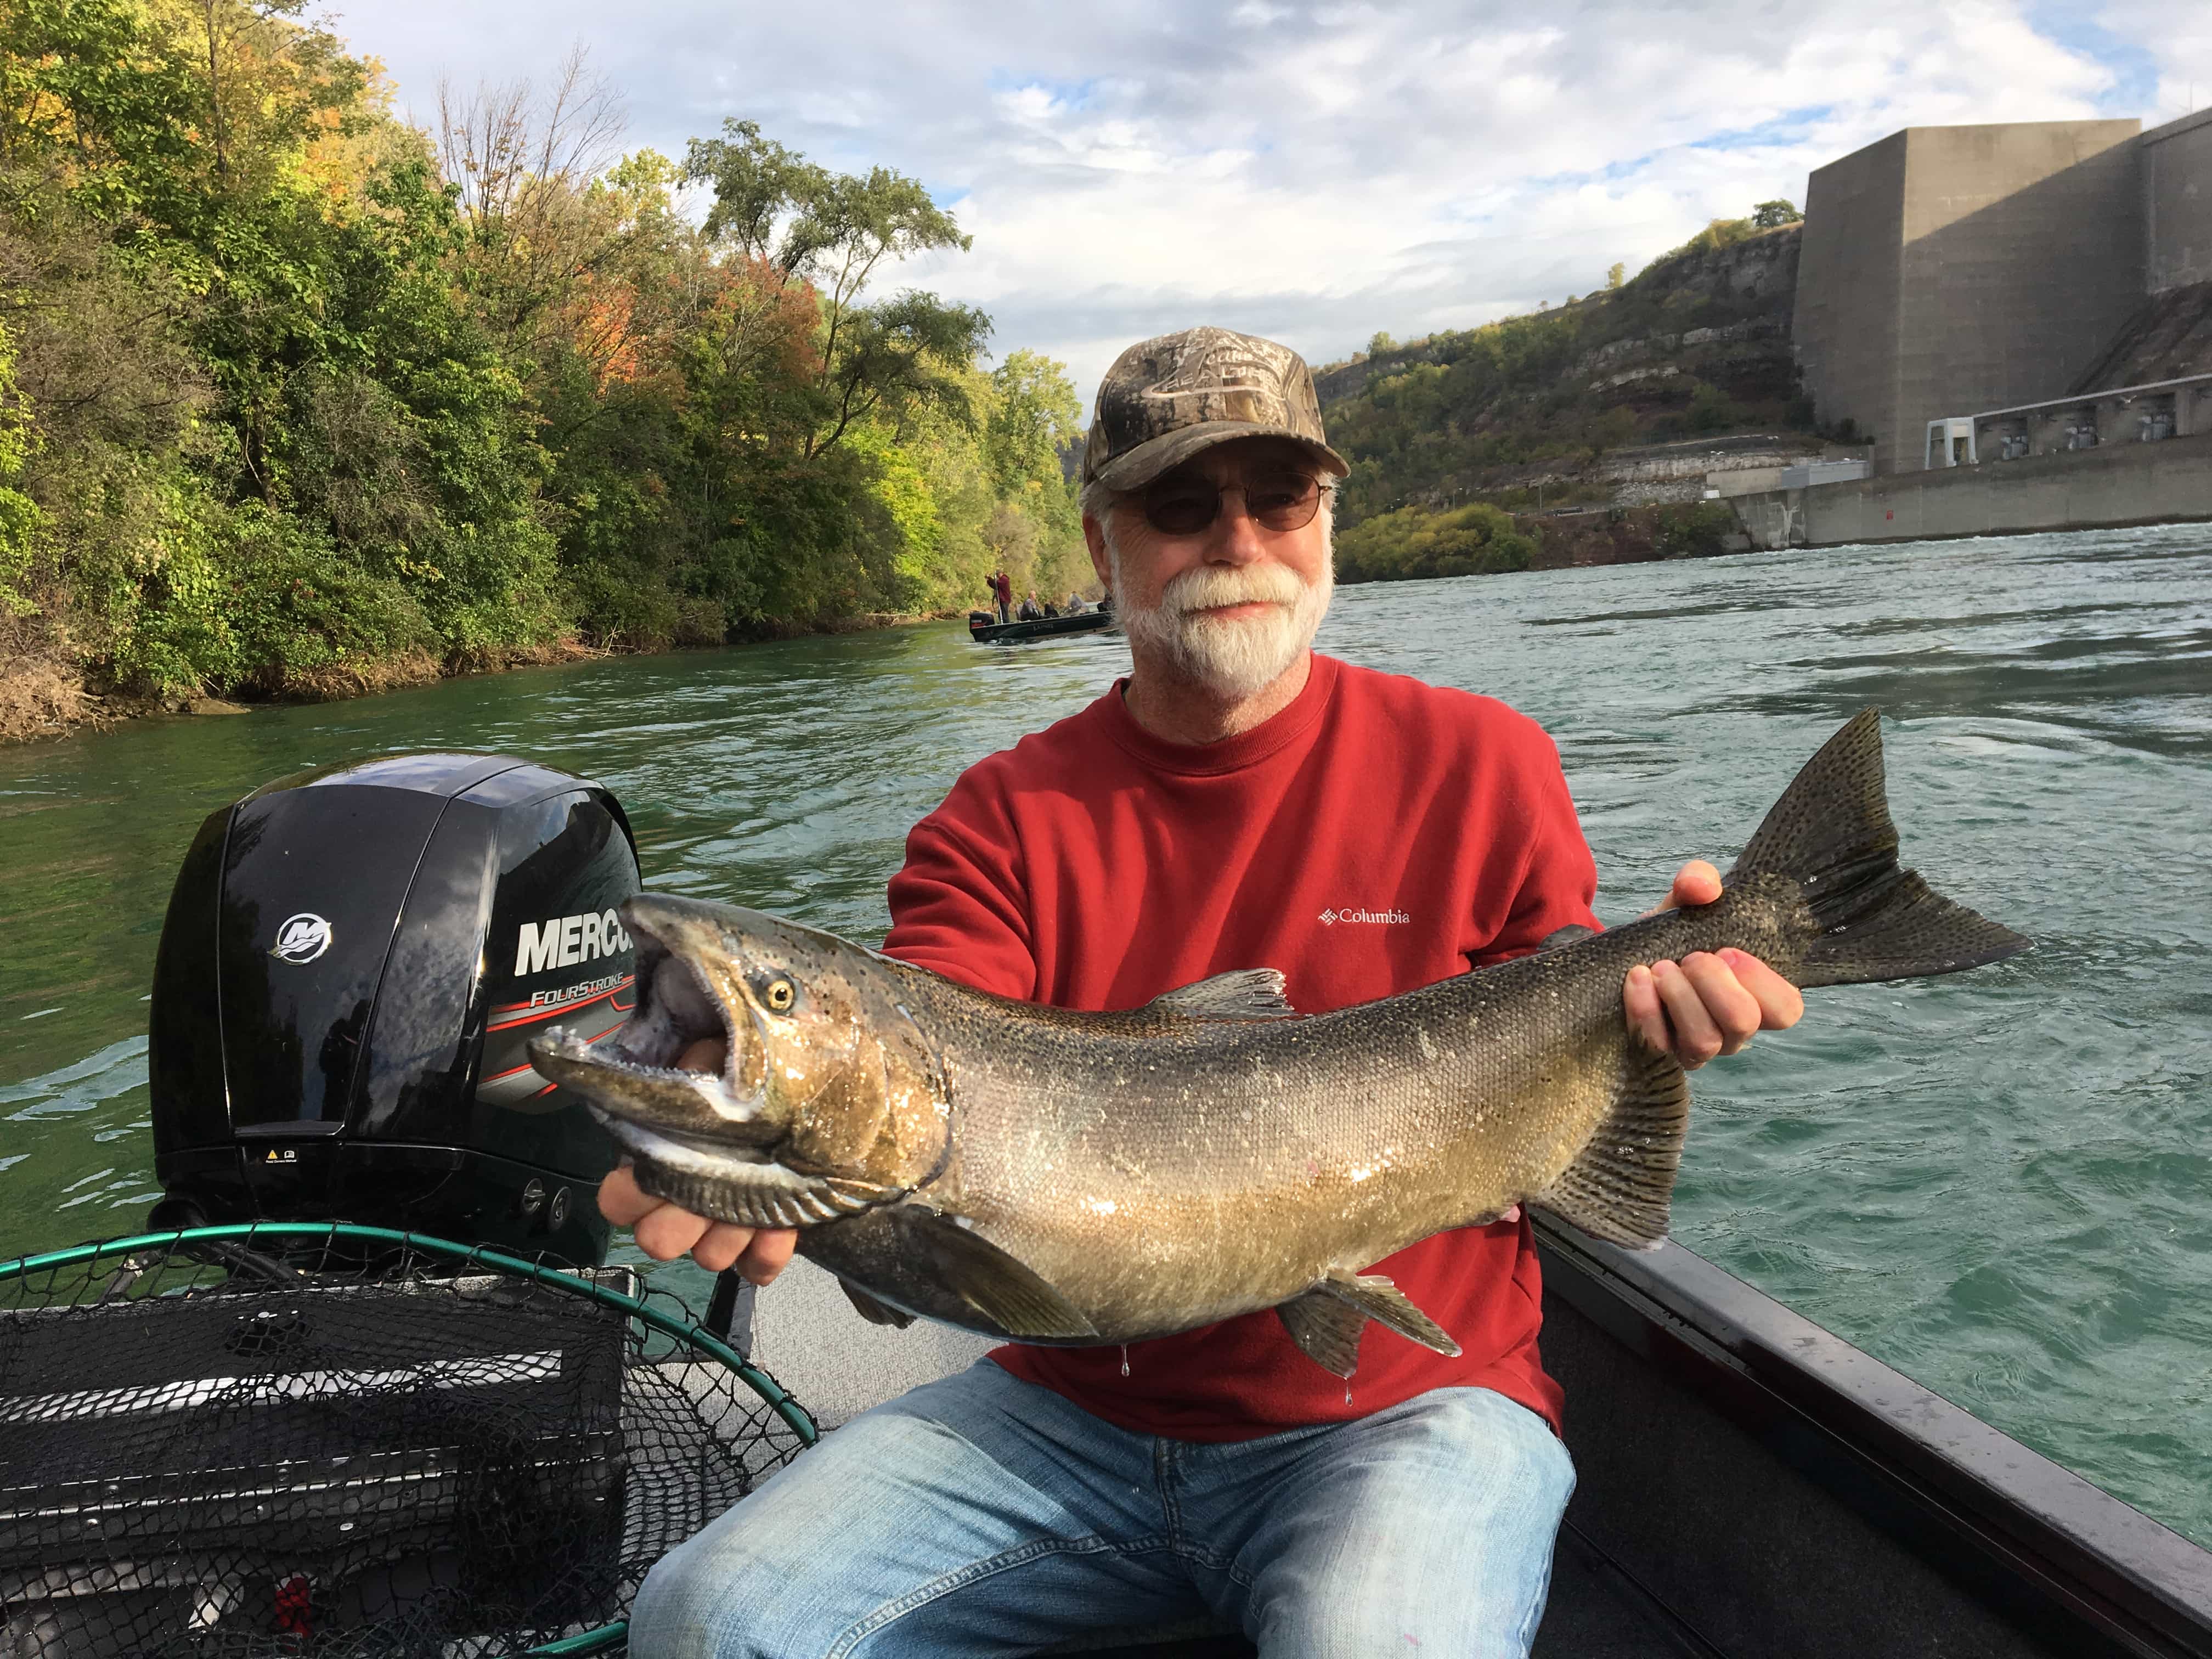 20171006 131558441 iOS - Fishing Buffalo Niagara - Fall 2017 Update